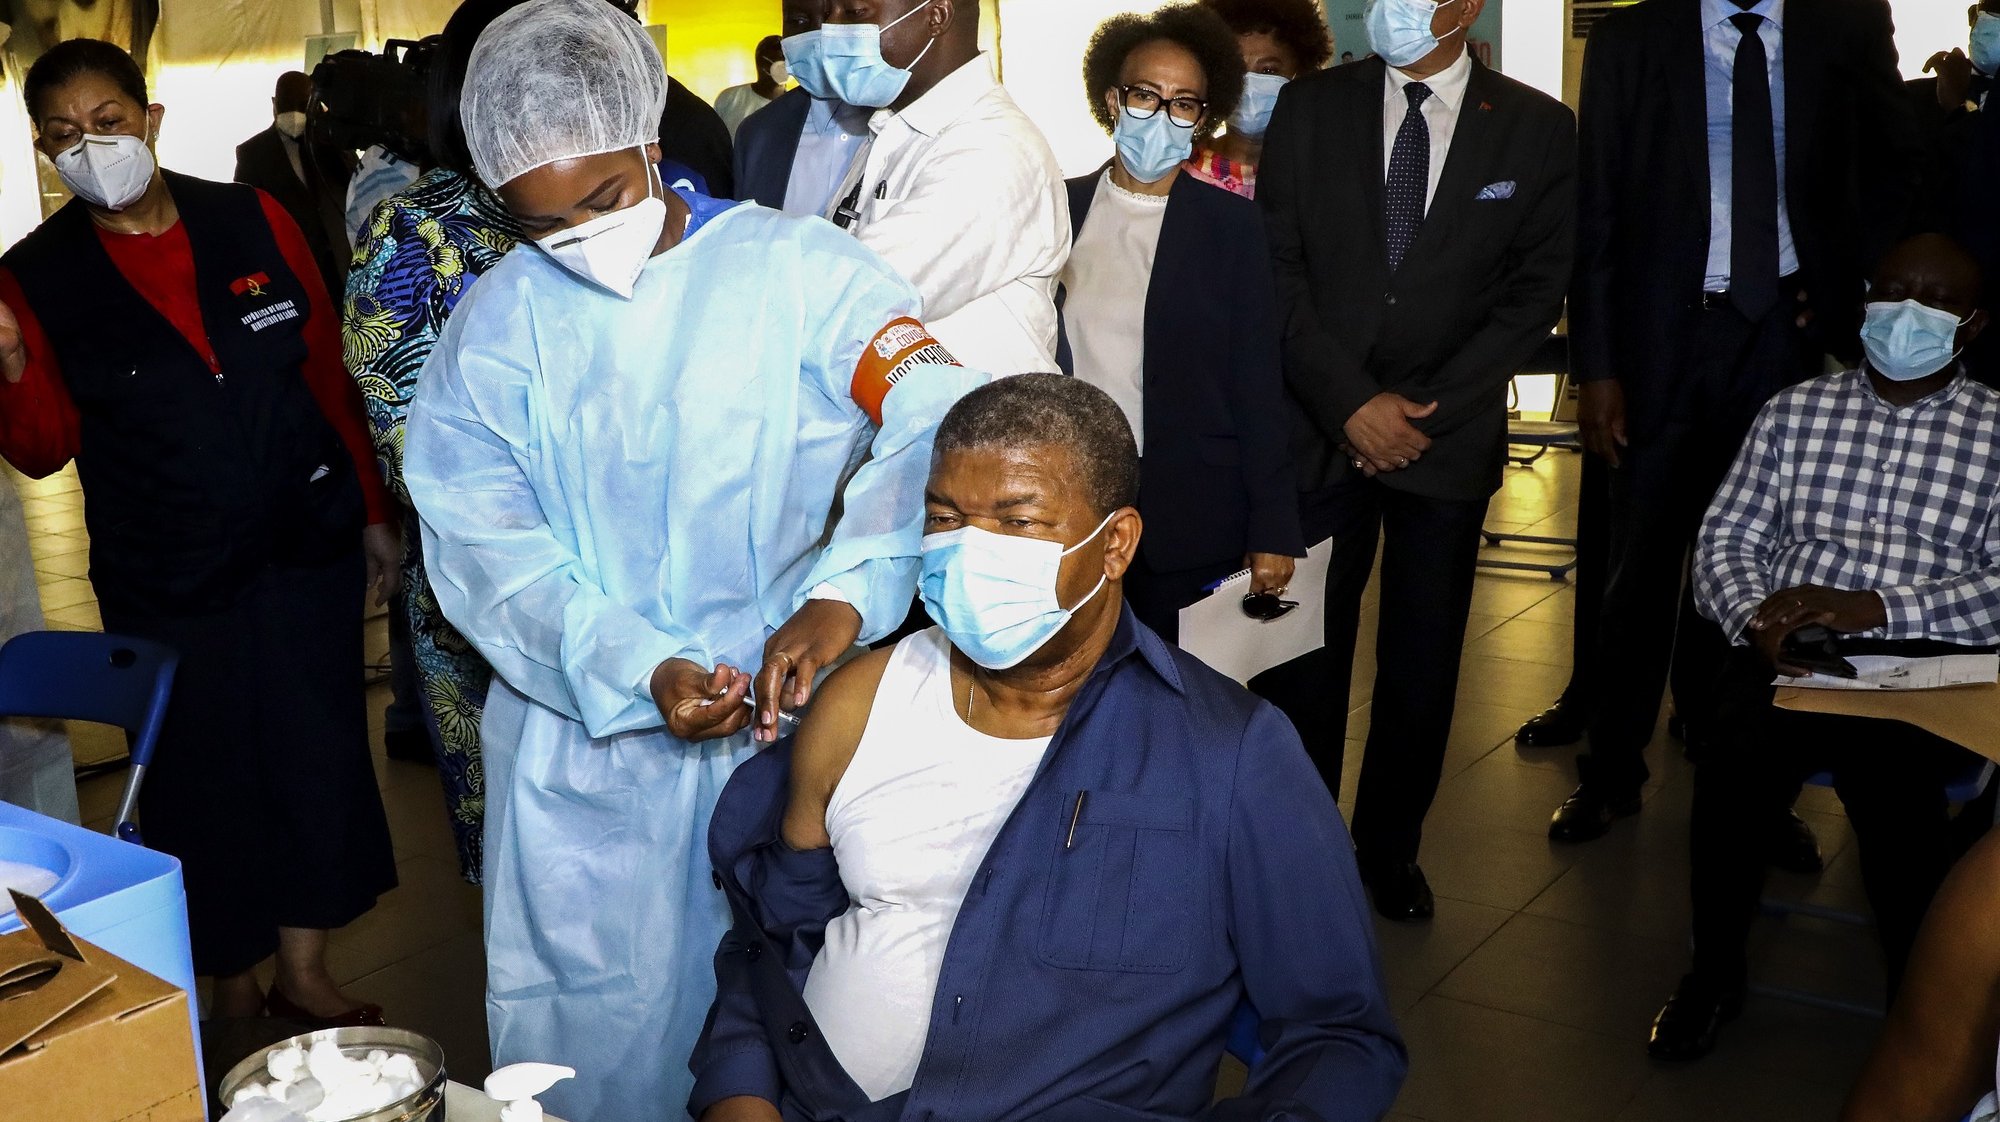 O Presidente de Angola, João Lourenço, foi hoje o cidadão número 591.886 a ser vacinado no país e insistiu na solidariedade internacional para um acesso mais igualitário às vacinas contra a covid-19, pois “ninguém se vai salvar sozinho”, no centro de vacinação contra a covid-19 em Luanda, Angola, 13 de maio de 2021. O país registou até quarta-feira 29.405 casos desde o início da pandemia, incluindo 645 óbitos, 25.187 recuperados da doença e 3.573 ativos. AMPE ROGÉRIO/LUSA